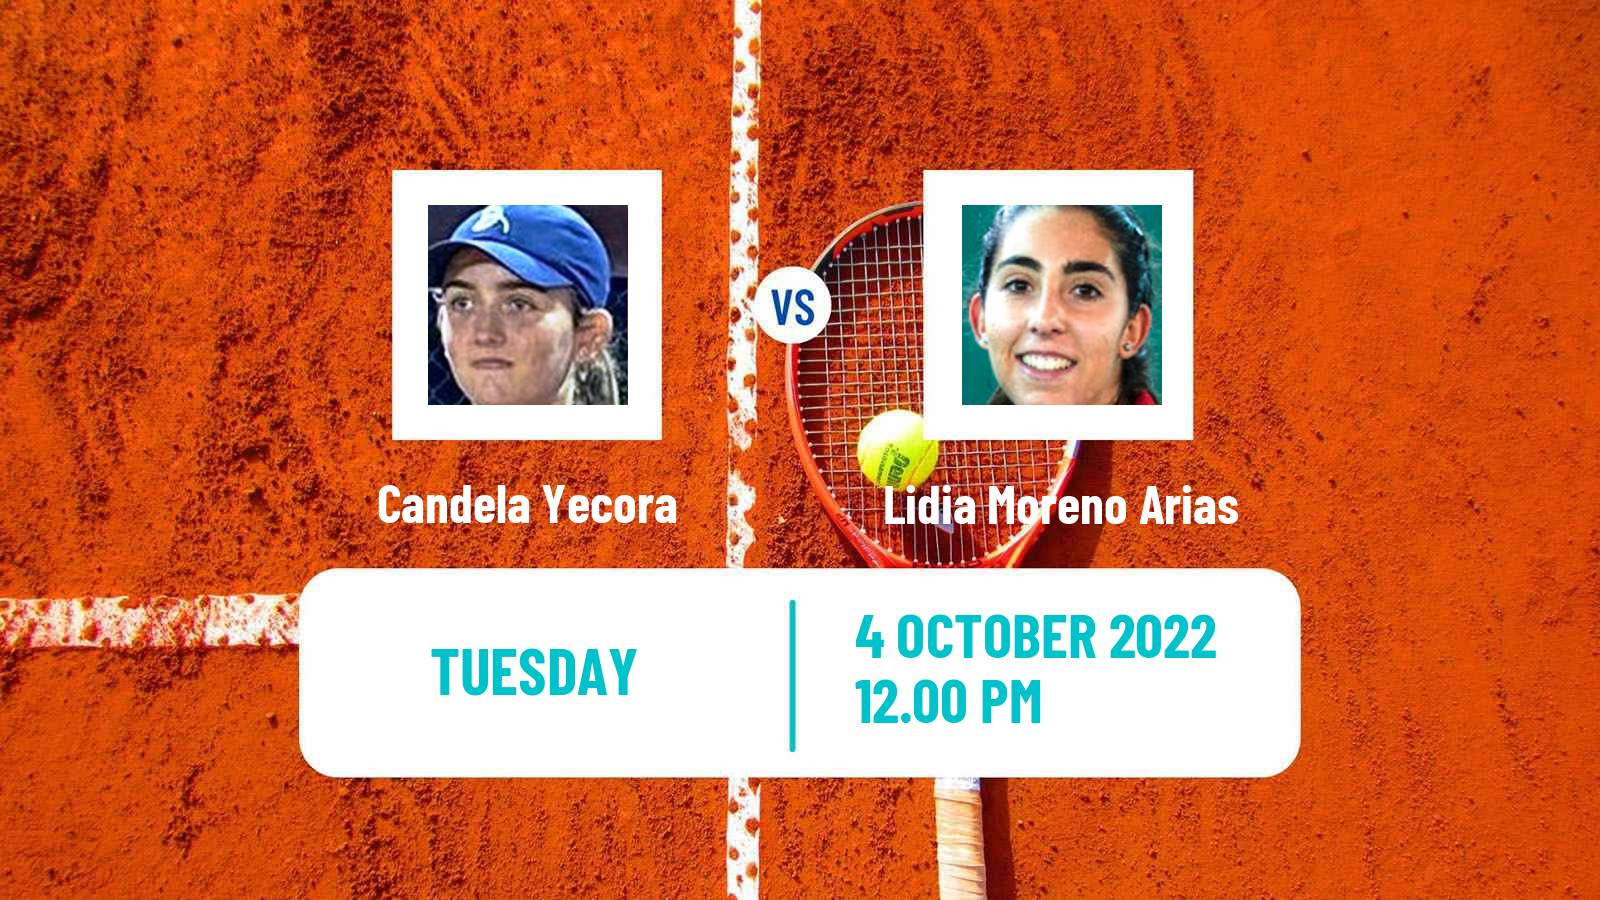 Tennis ITF Tournaments Candela Yecora - Lidia Moreno Arias